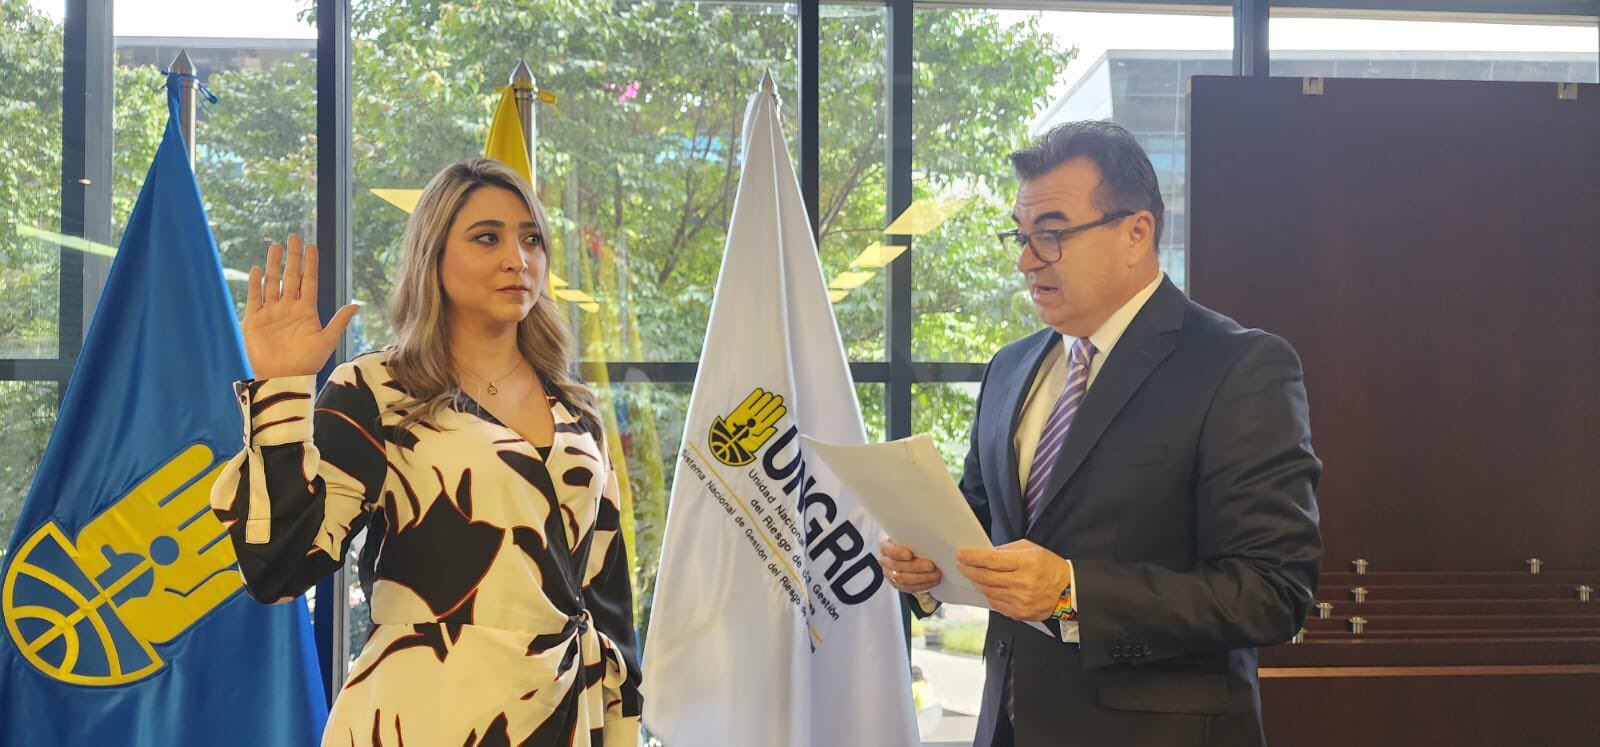 Ana María Castaño, secretaria general de la Ungrd, denunció que le pidieron la renuncia sin importar que estaba en embarazo - crédito redes sociales / X